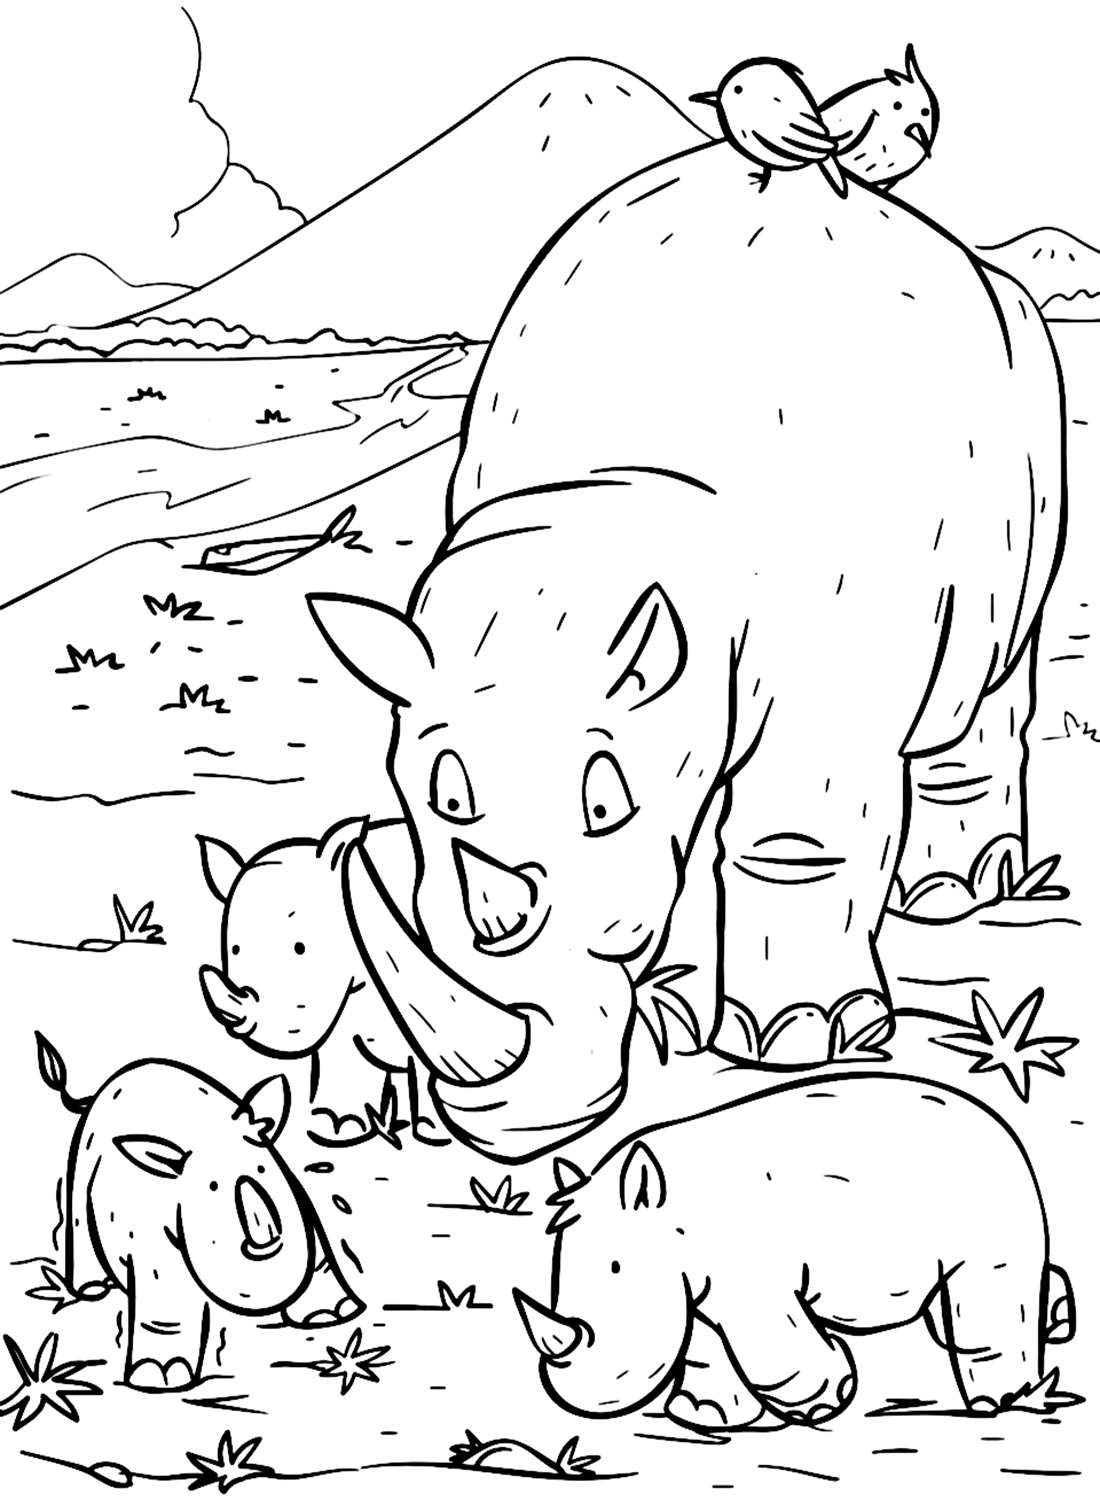 الأطفال ووحيد القرن عجل من وحيد القرن